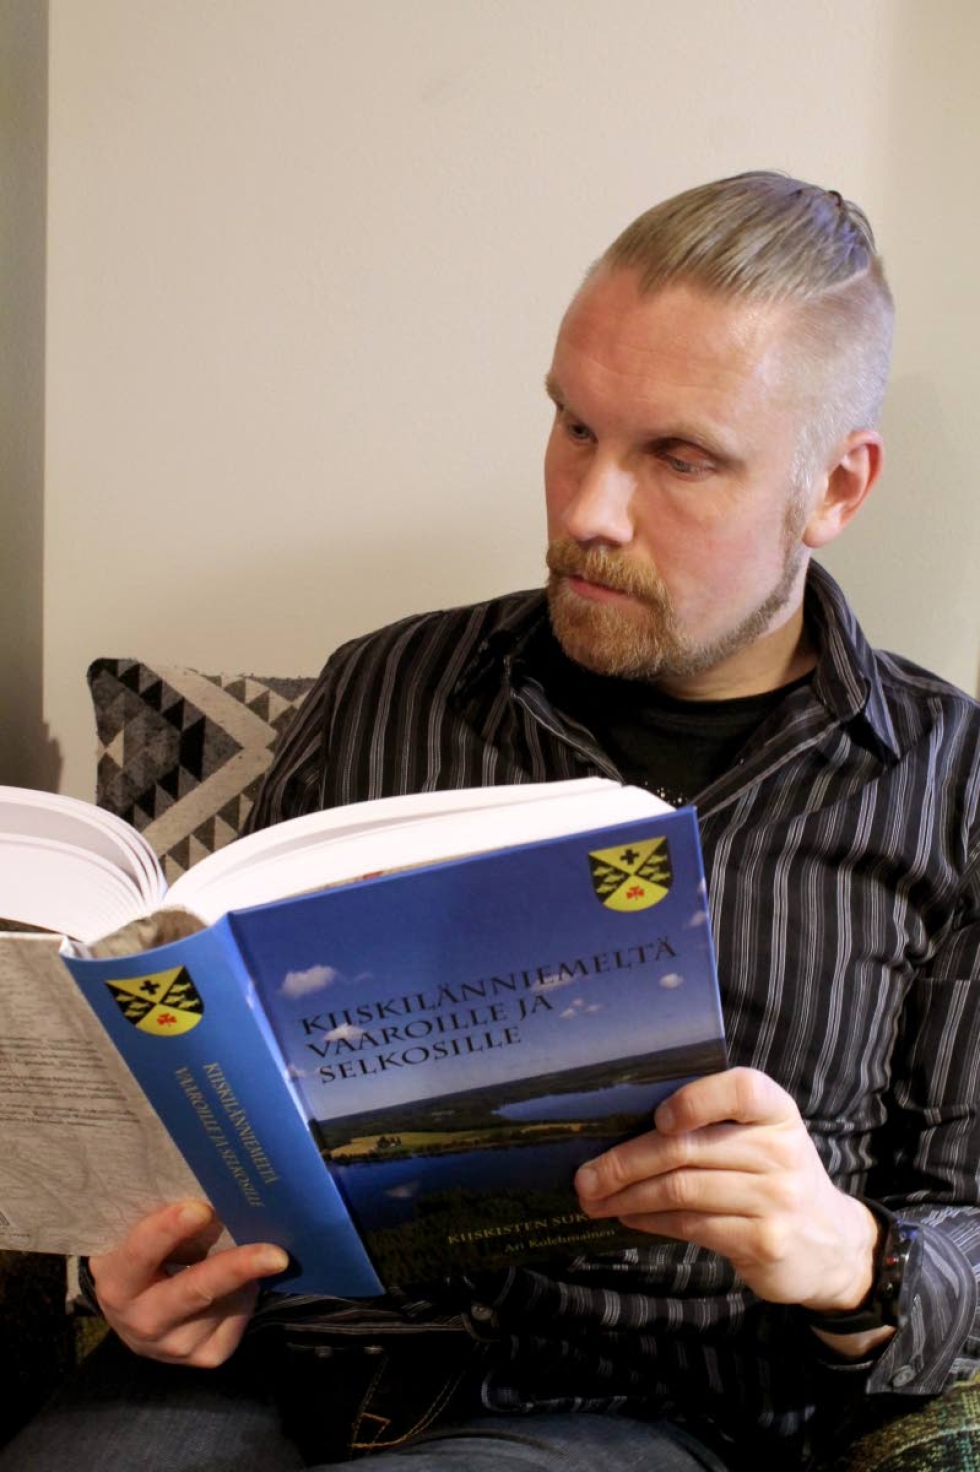 Ari Kolehmaisen koostama sukututkimusteos Kiiskilänniemeltä vaaroille ja selkosille keskittyy Kiiskisen suvun varhaisimpiin vaiheeseen.